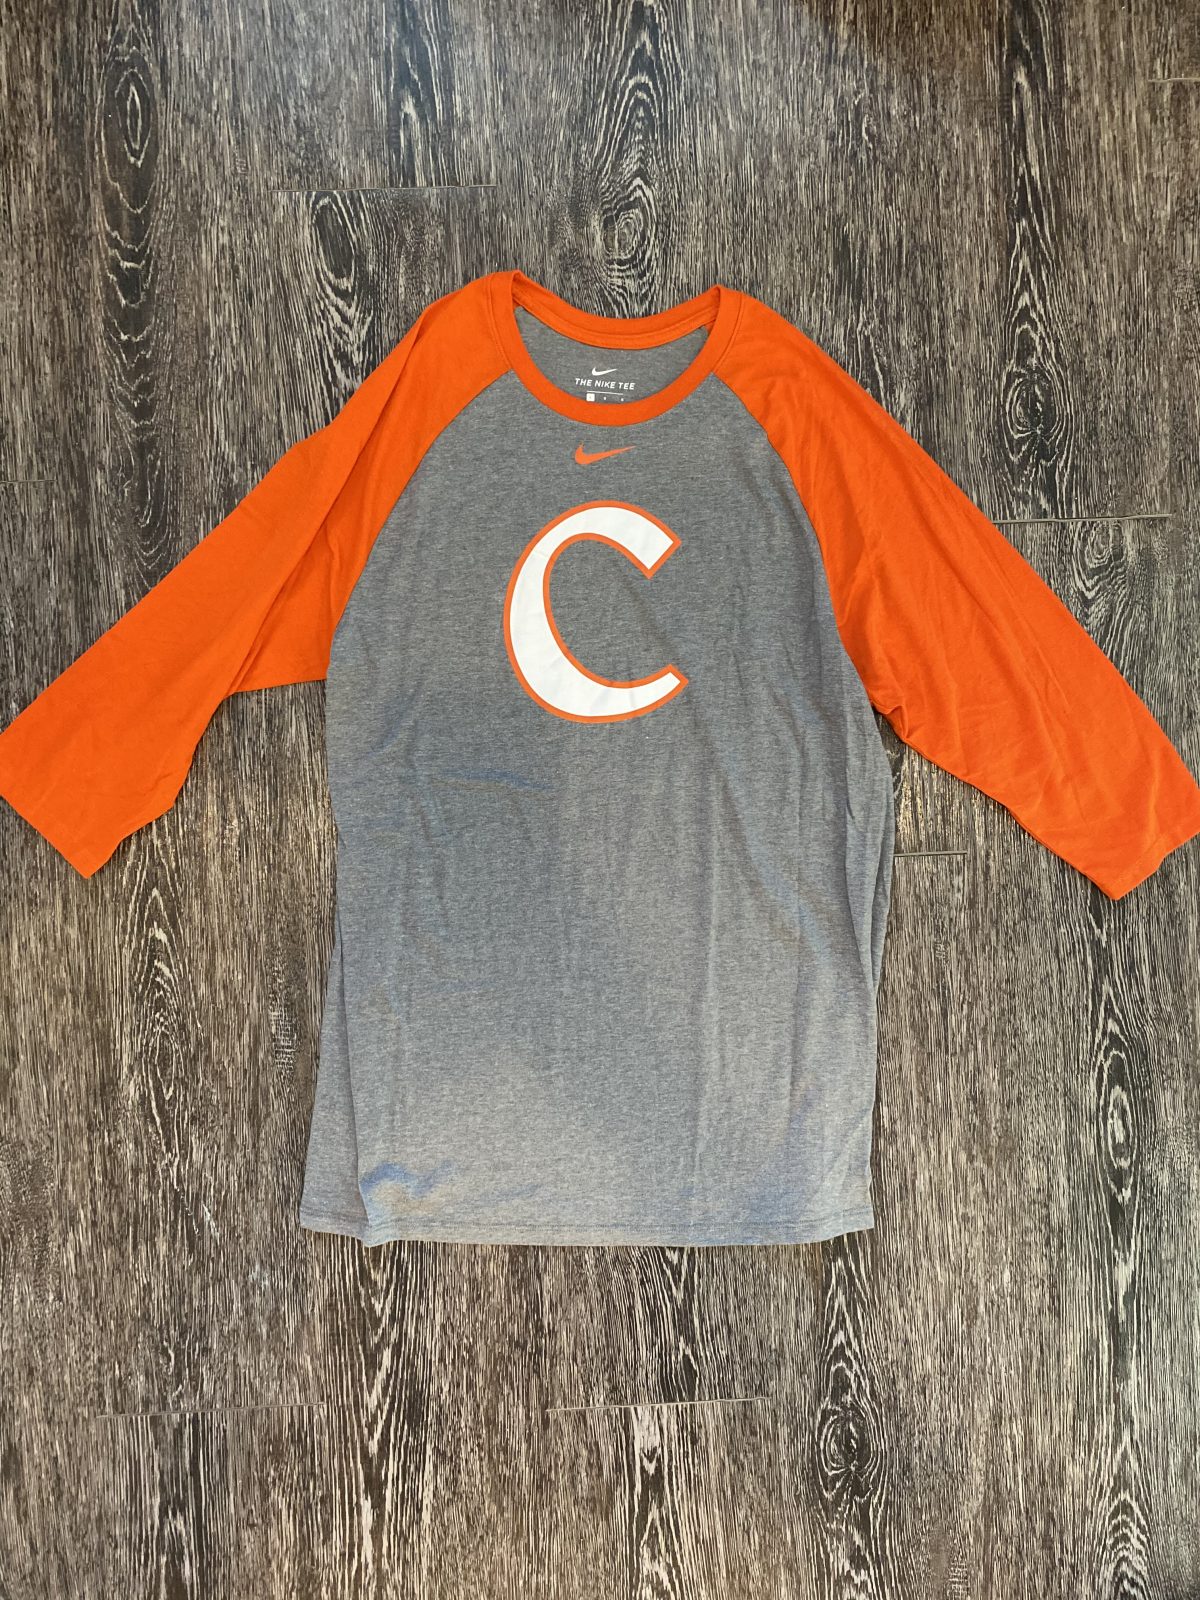 Mat Clark Clemson Baseball Nike 3/4 Sleeve : NARP Clothing